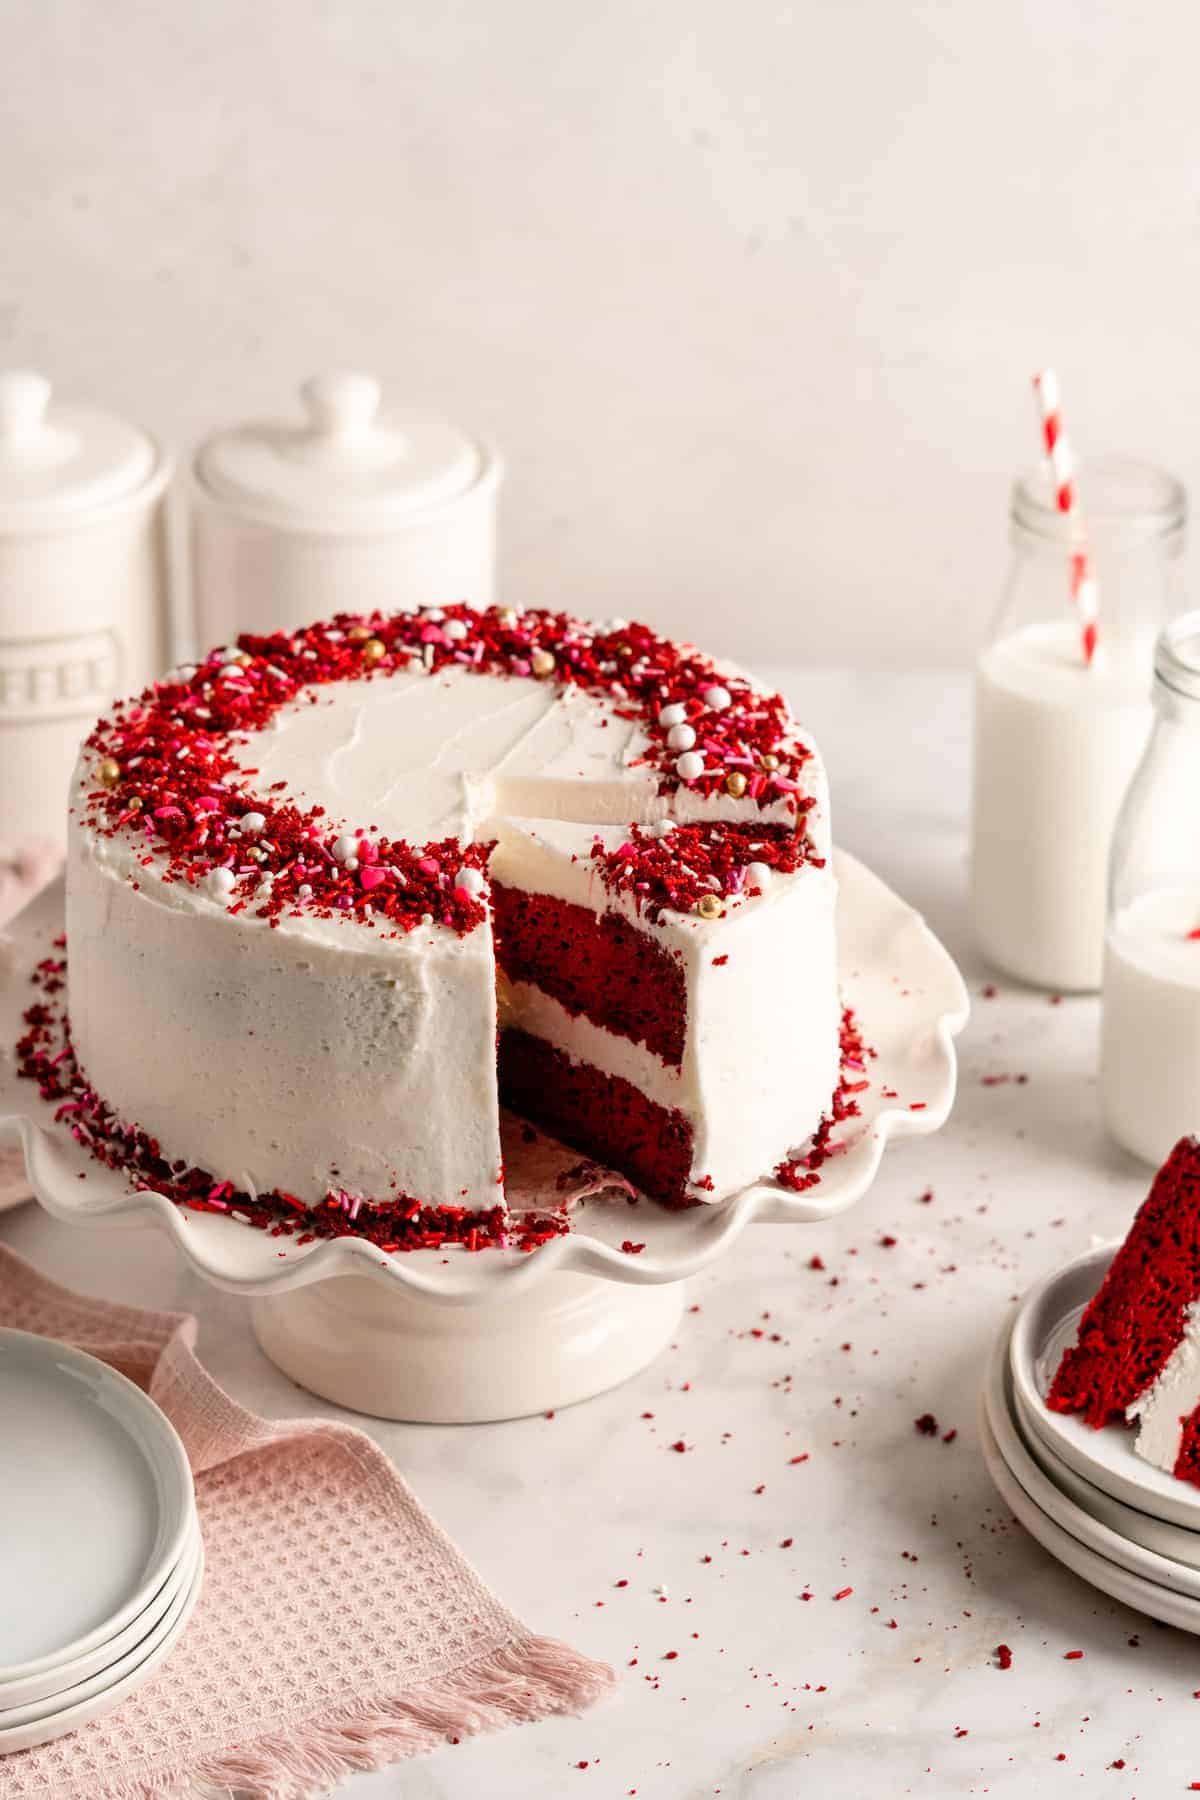 Vegan Red Velvet Cake - Easy Minimalist Layer Cake!